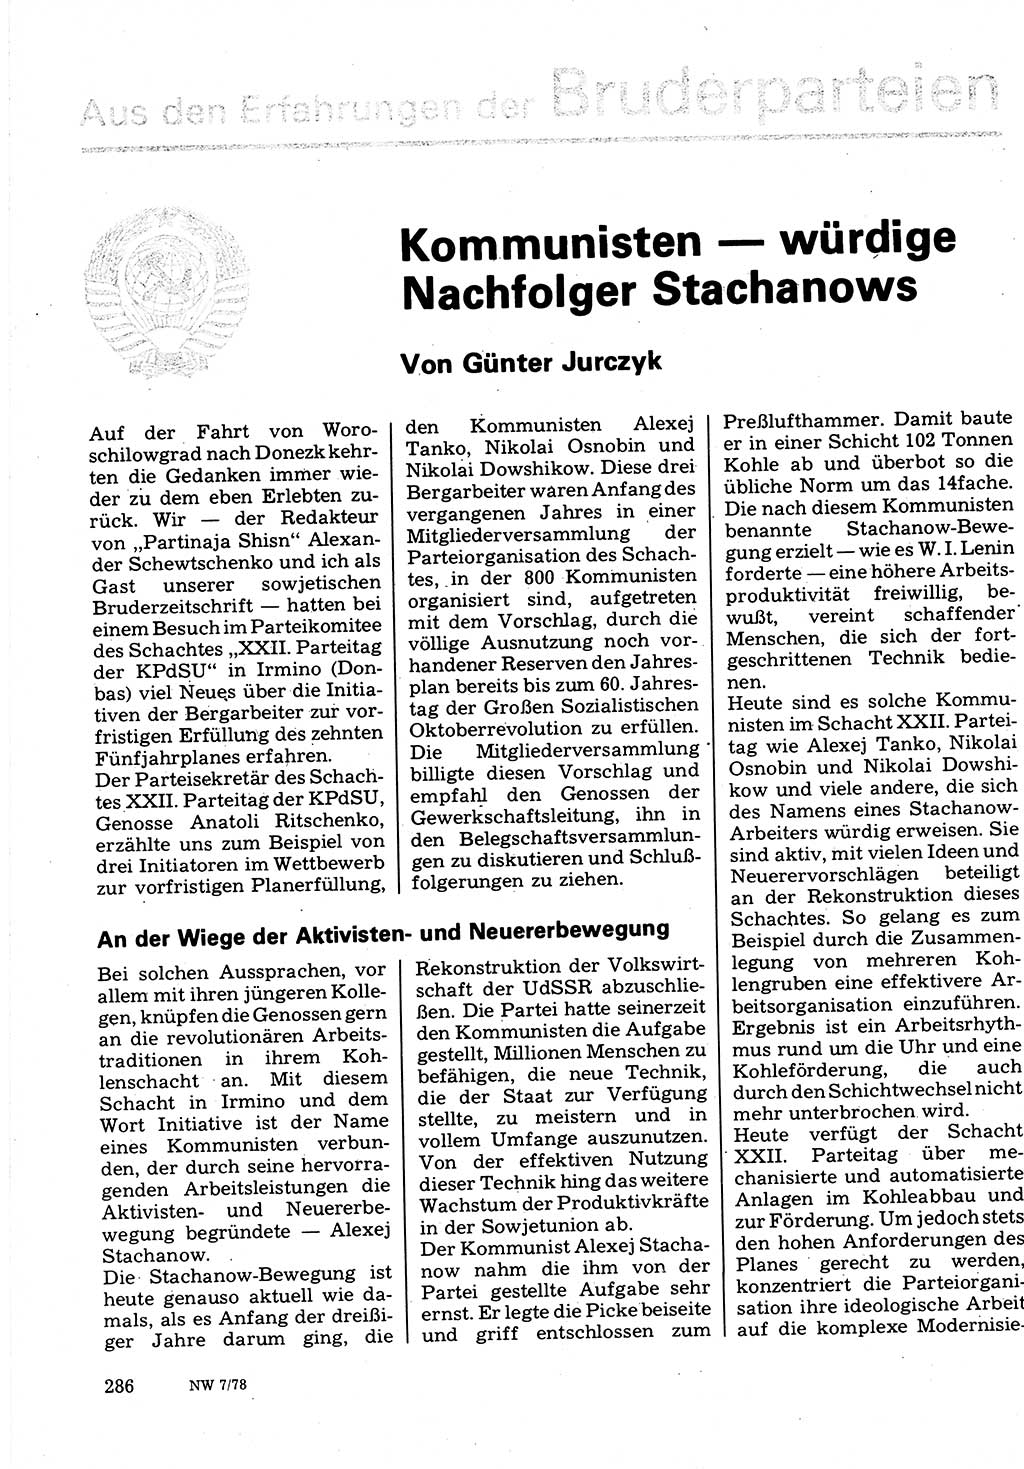 Neuer Weg (NW), Organ des Zentralkomitees (ZK) der SED (Sozialistische Einheitspartei Deutschlands) für Fragen des Parteilebens, 33. Jahrgang [Deutsche Demokratische Republik (DDR)] 1978, Seite 286 (NW ZK SED DDR 1978, S. 286)